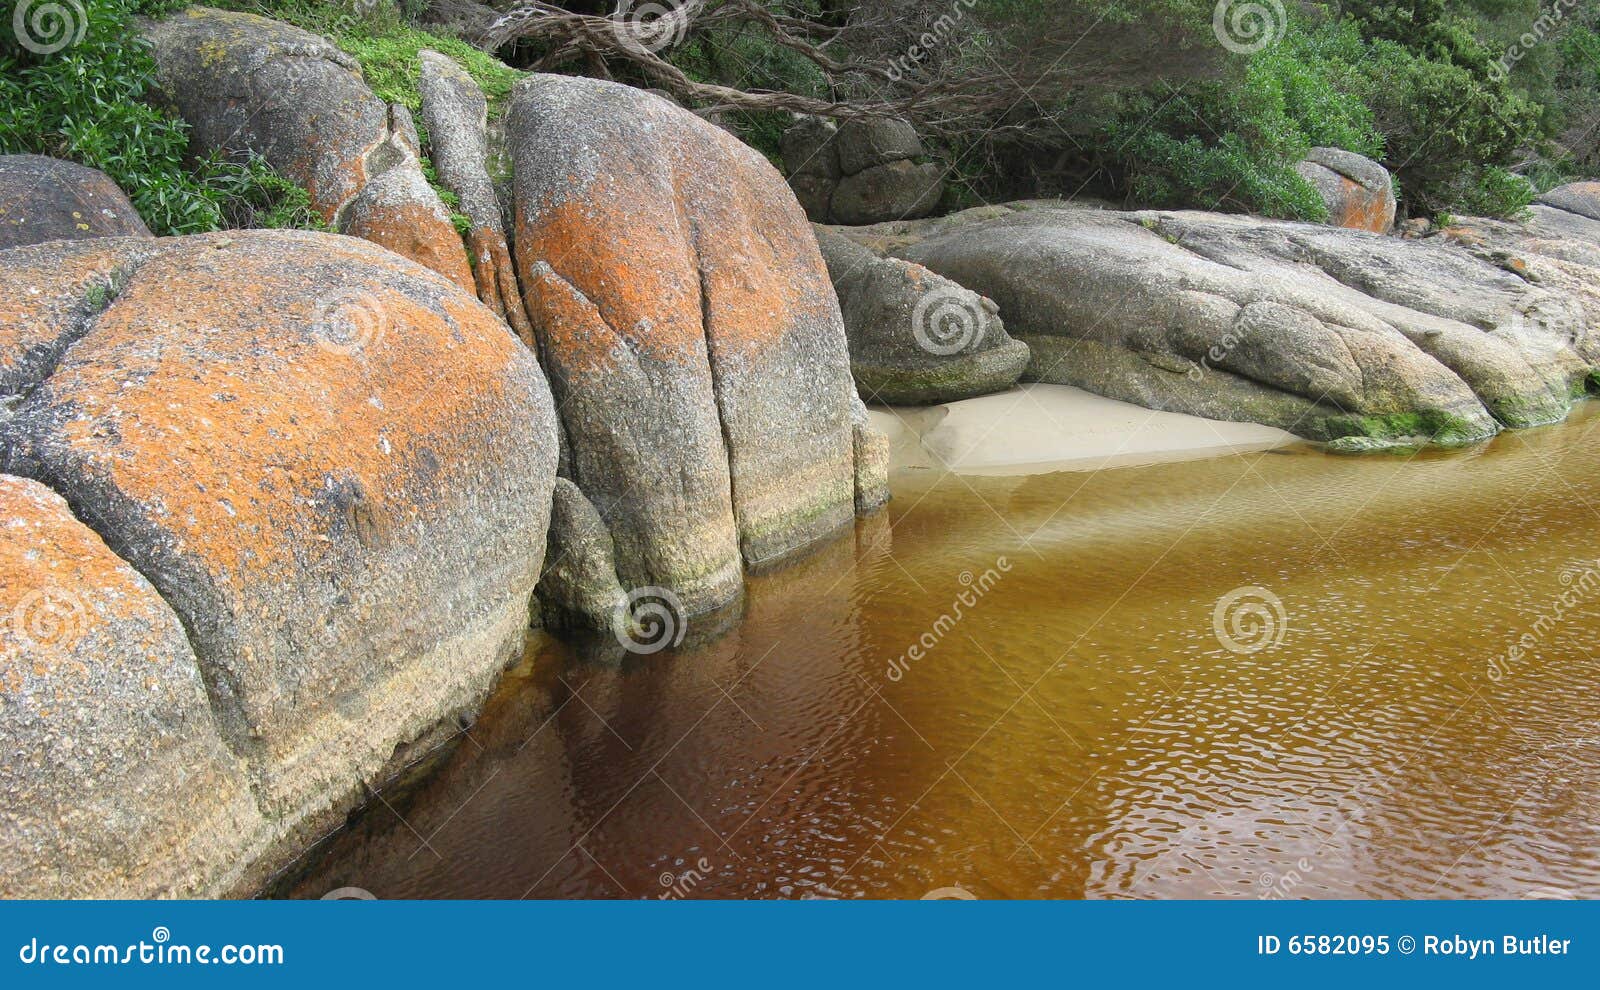 tidal river rocks